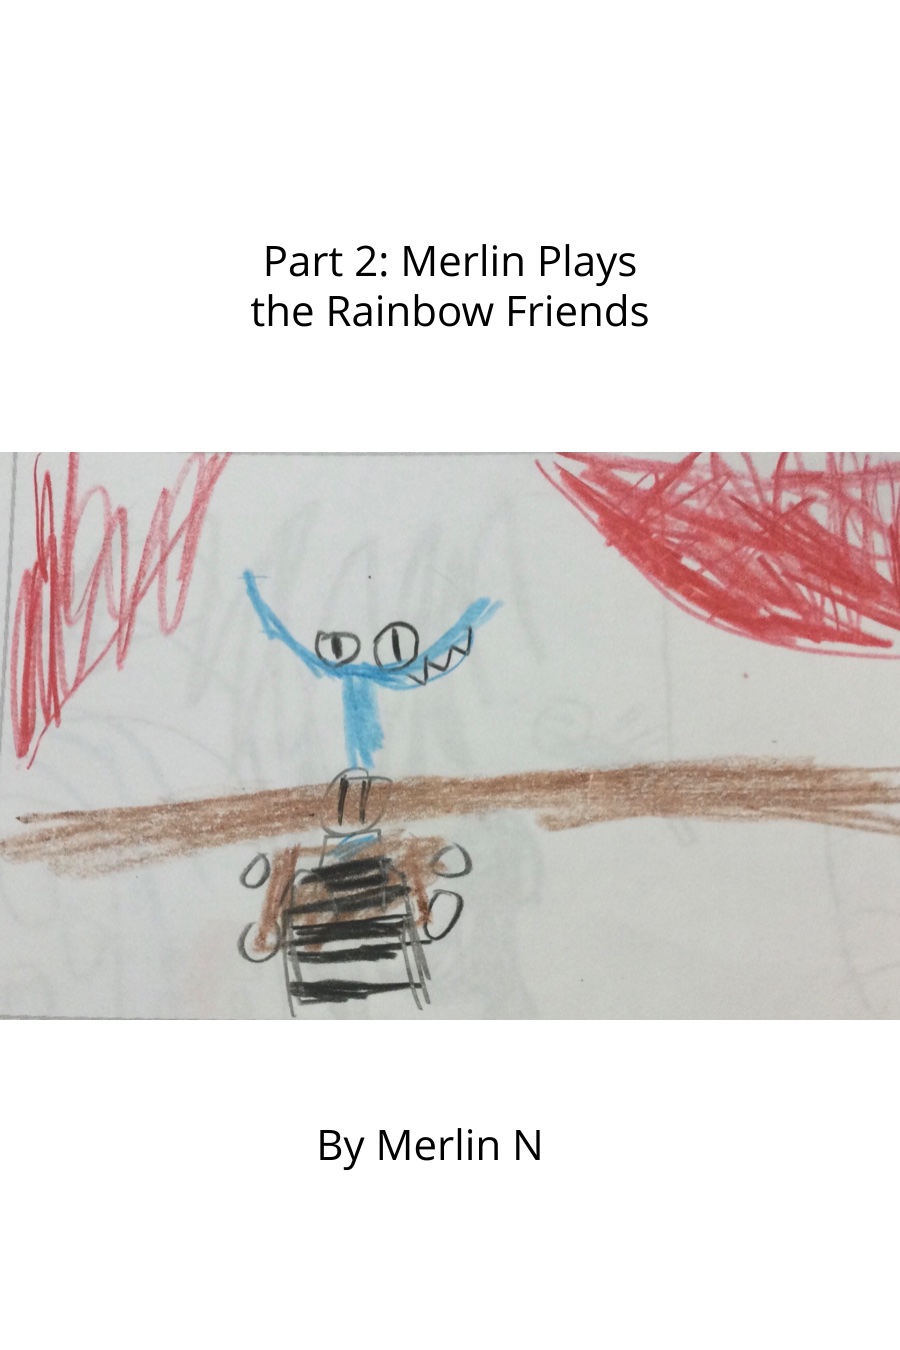 Merlin Plays Rainbow Friends by Merlin N